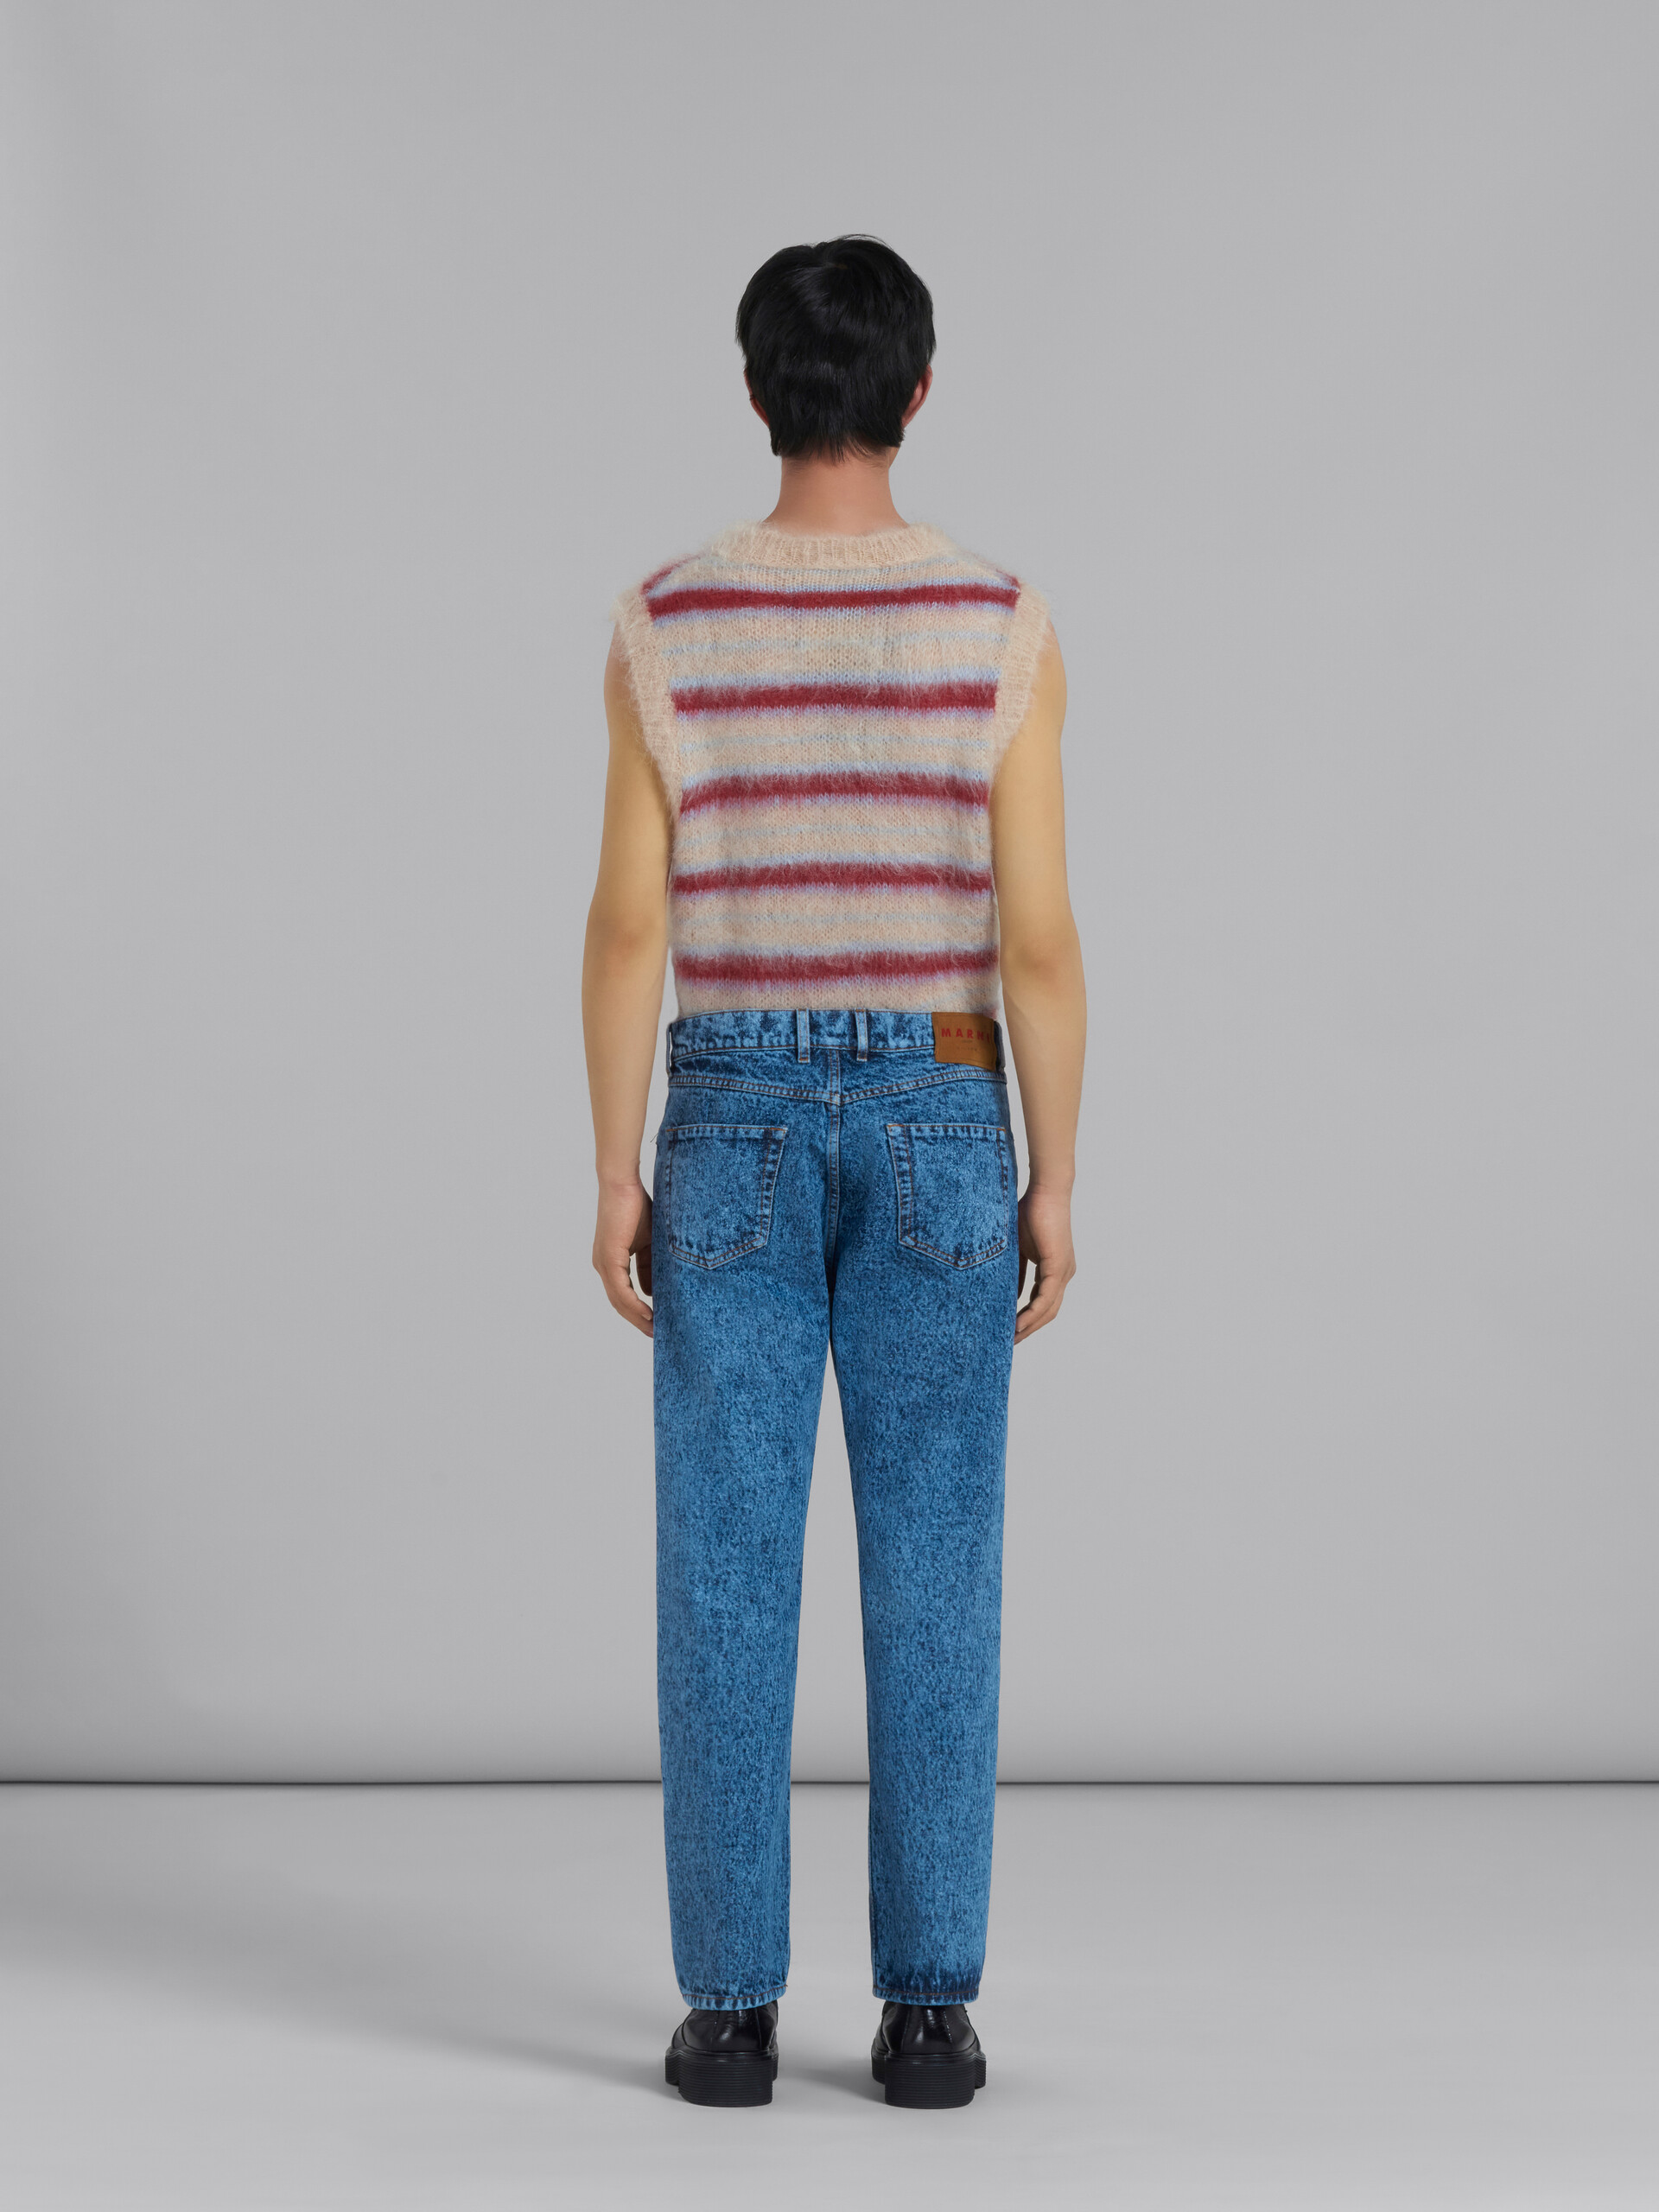 Blaue, gerade geschnittene Hose aus Baumwolldrillich mit marmoriertem Muster - Hosen - Image 3